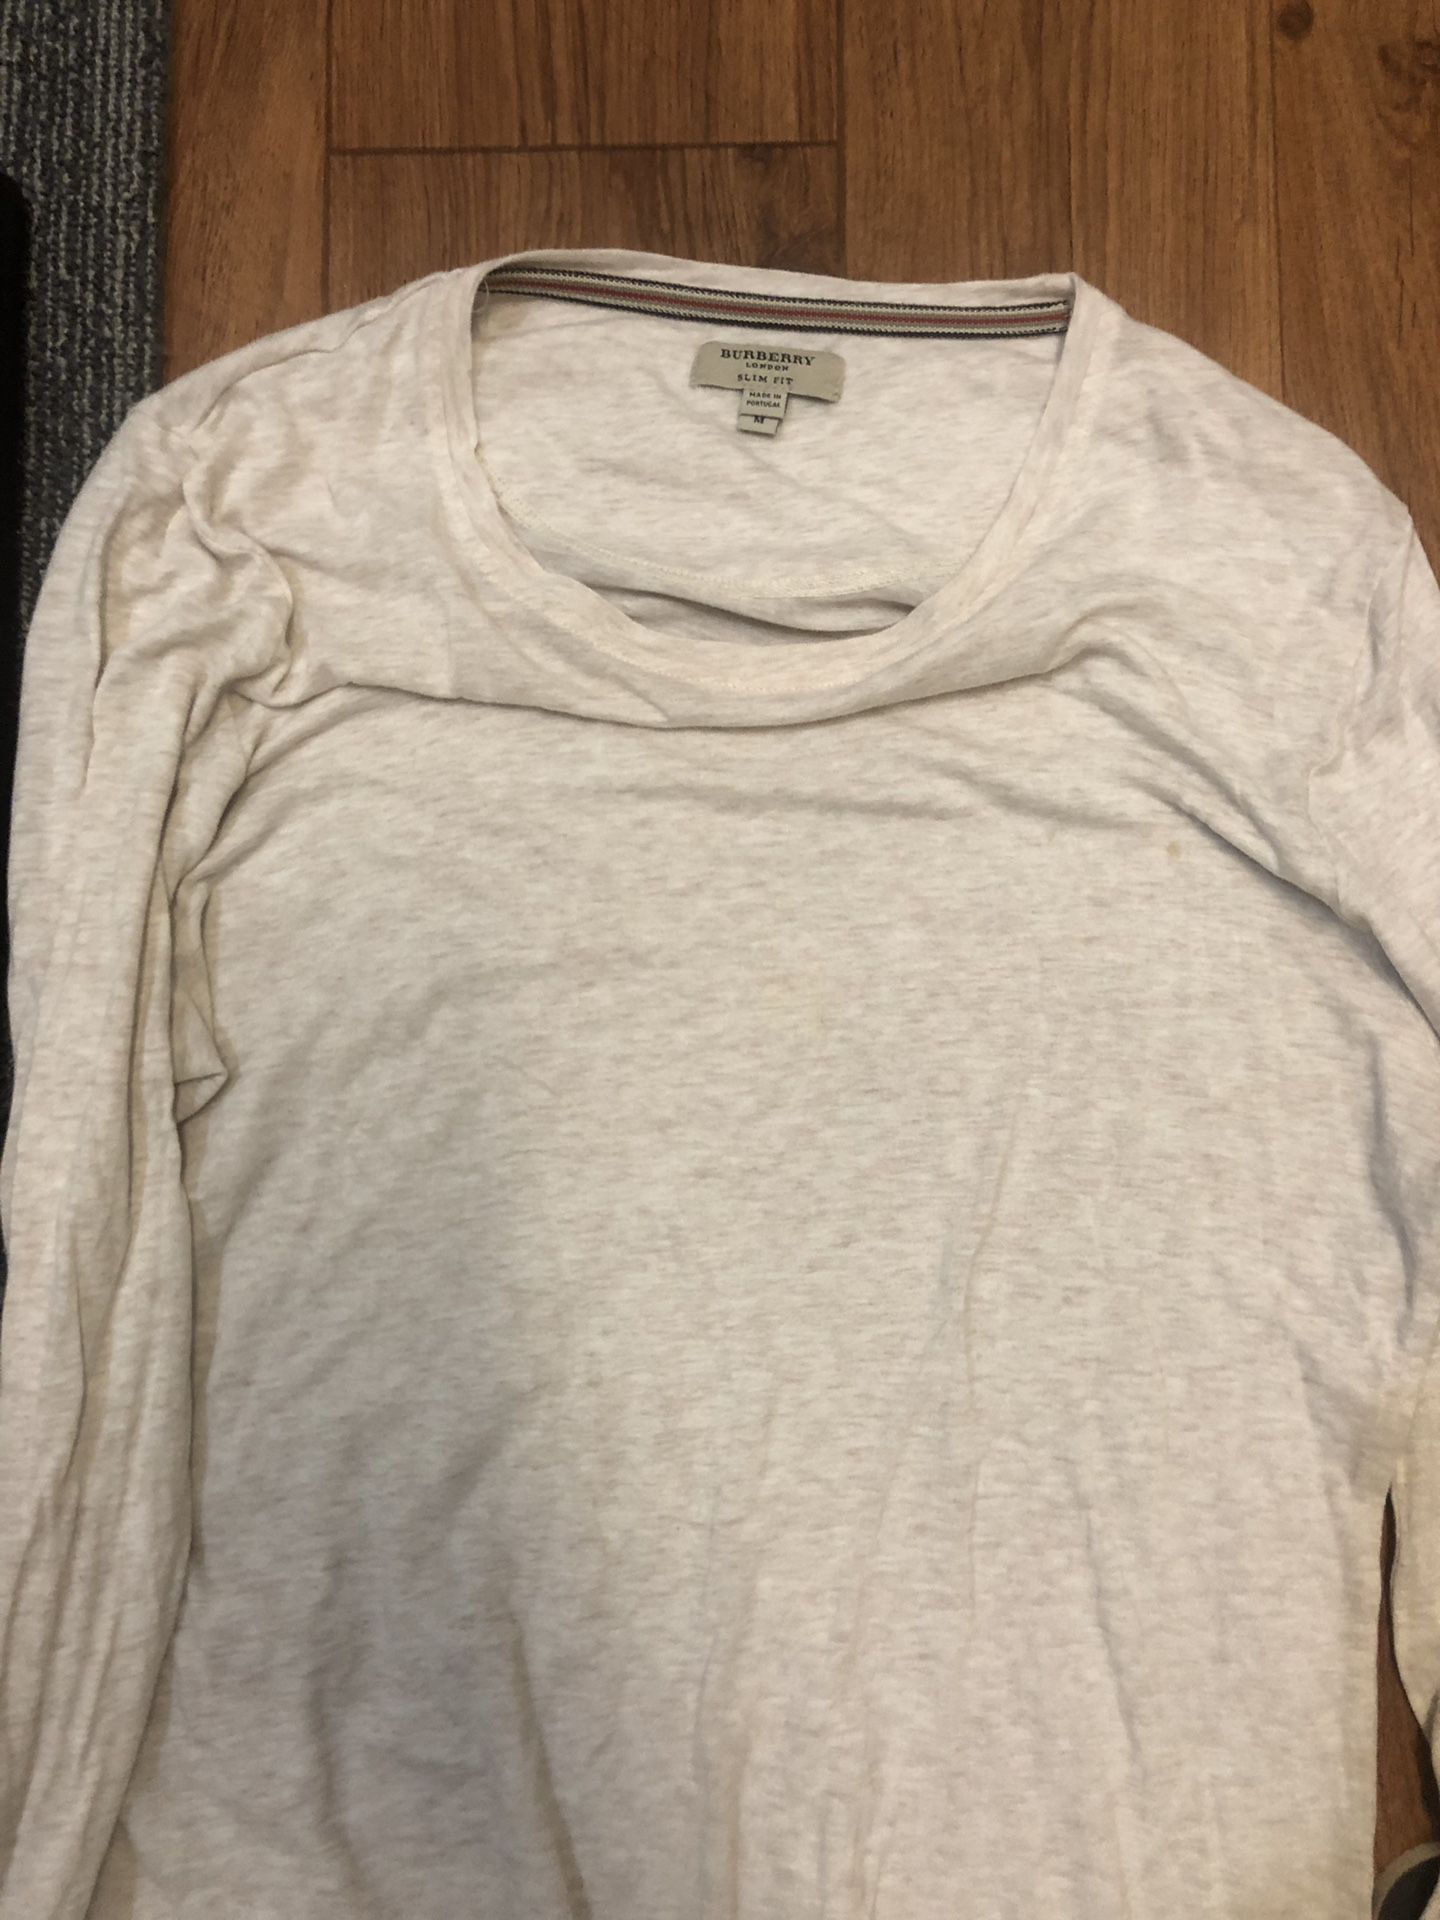 Burberry men’s shirt size medium real